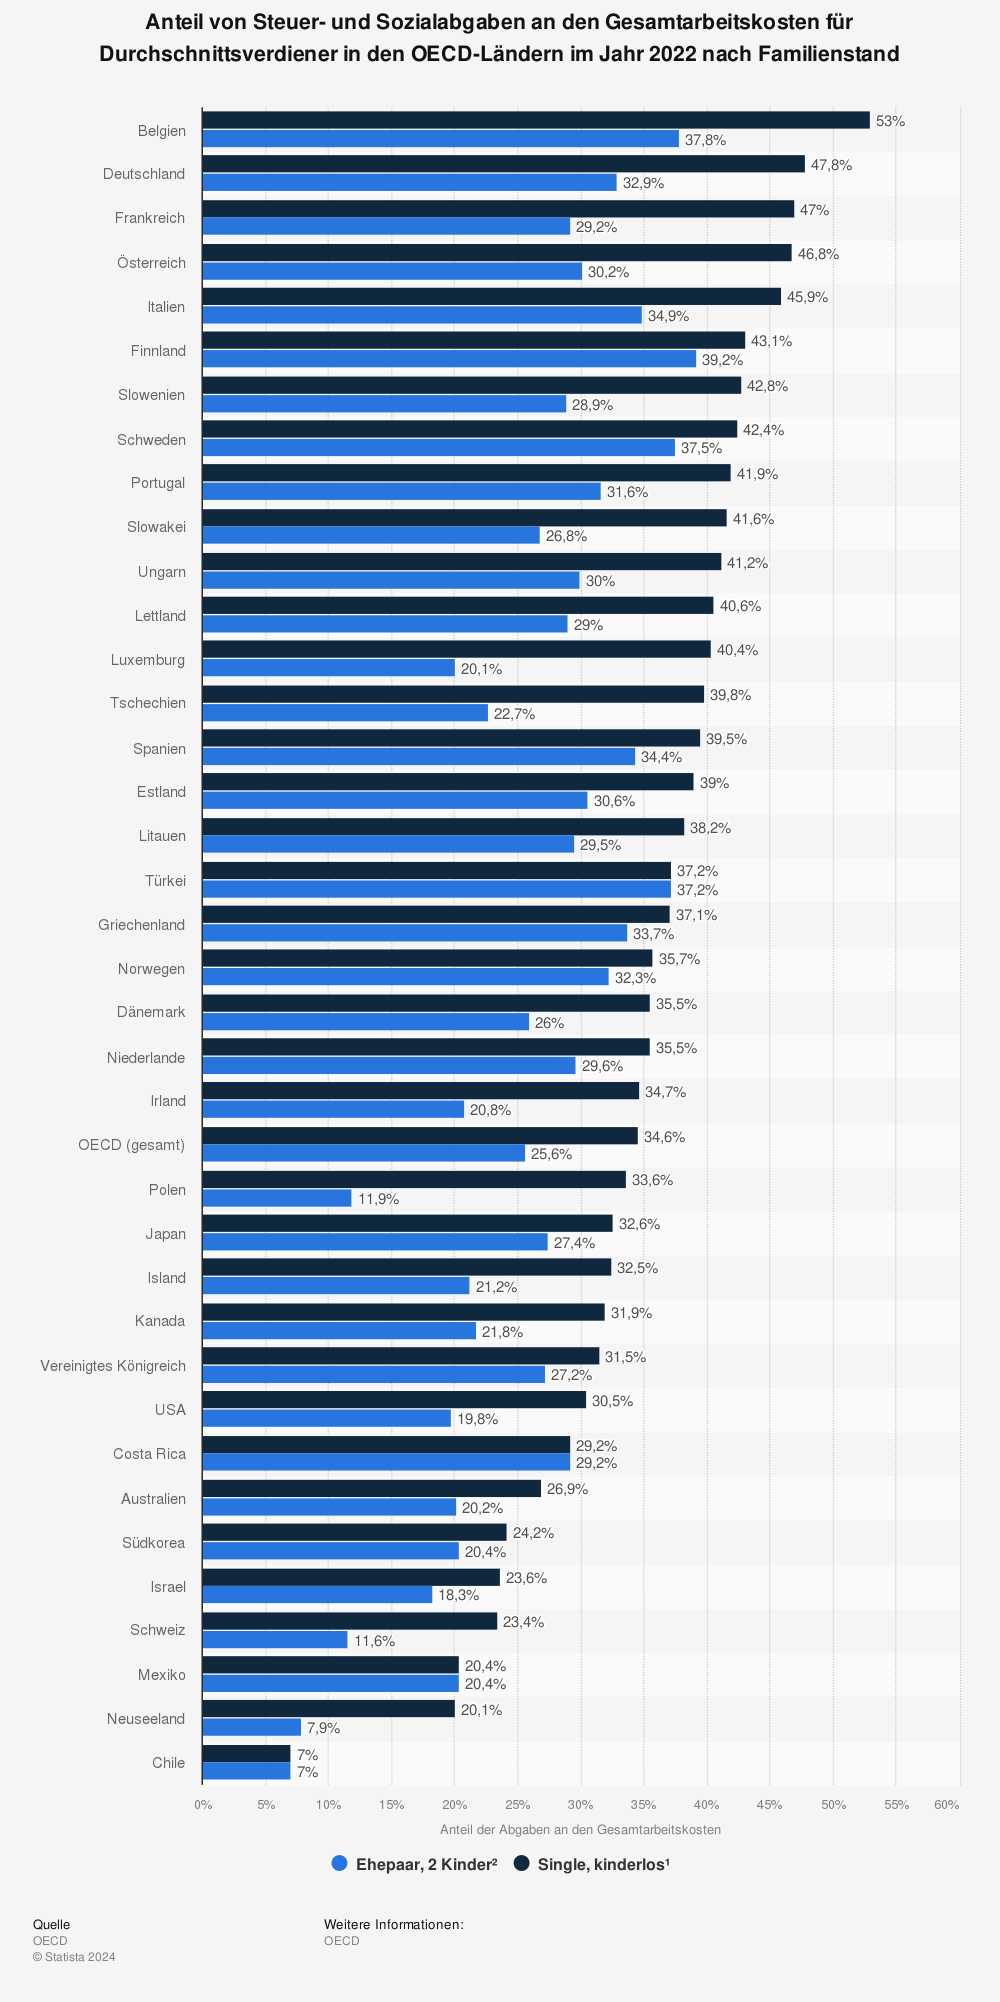 Statistik: Anteil von Steuer- und Sozialabgaben an den Gesamtarbeitskosten für Durchschnittsverdiener in den OECD-Ländern im Jahr 2020 nach Familienstand | Statista